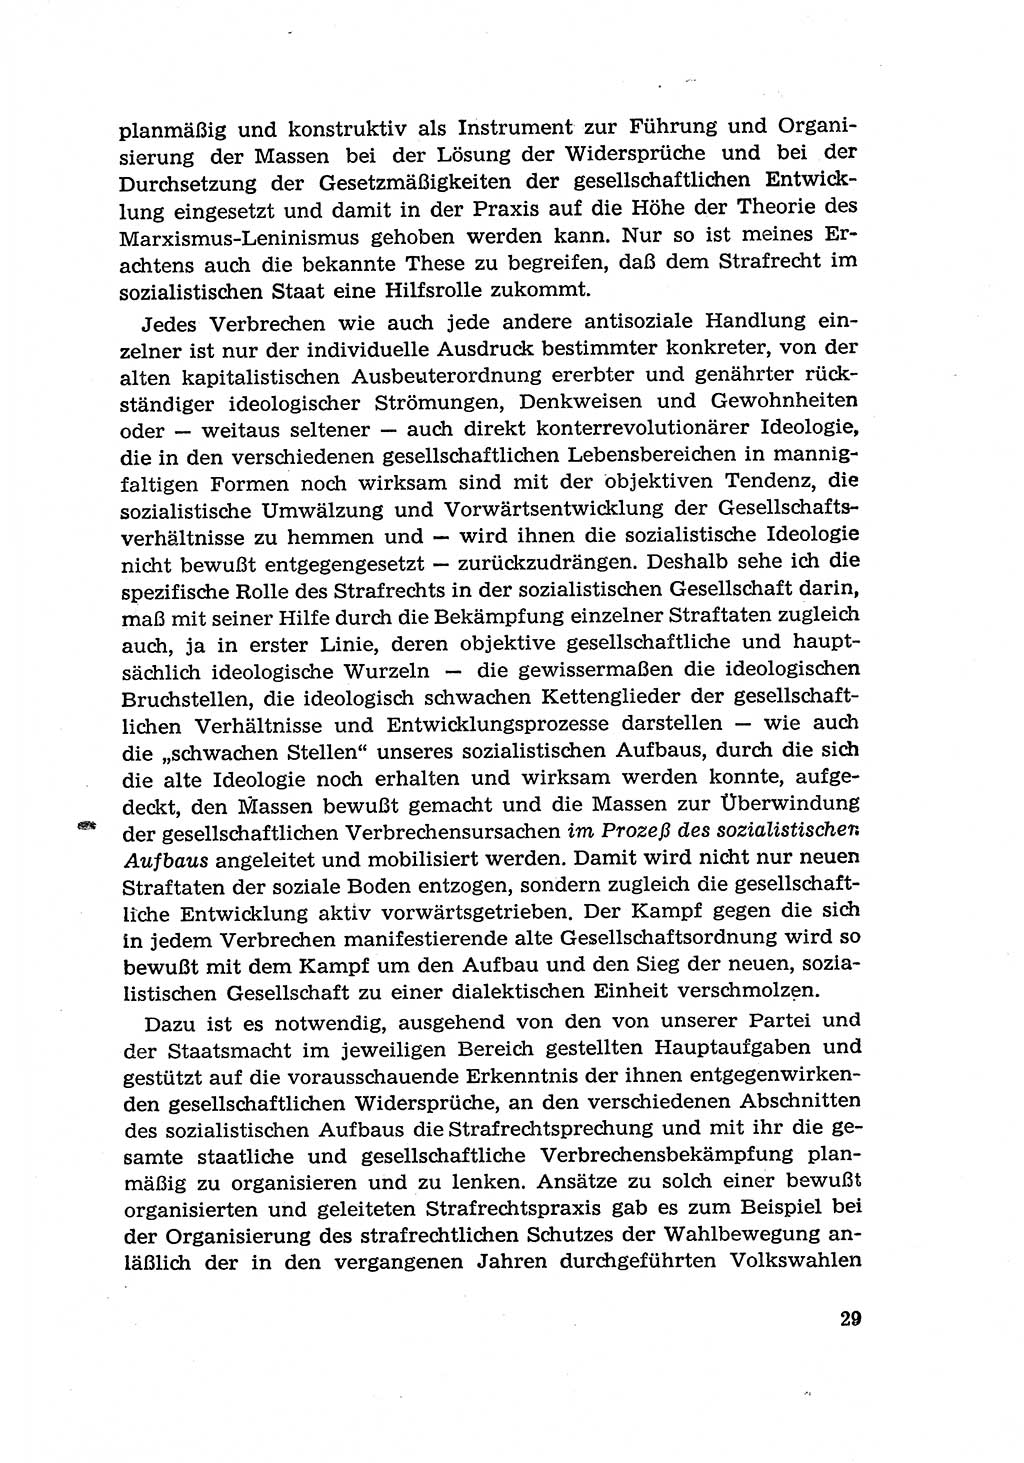 Zur Entwicklung des sozialistischen Strafrechts der Deutschen Demokratischen Republik (DDR) 1960, Seite 29 (Entw. soz. Strafr. DDR 1960, S. 29)